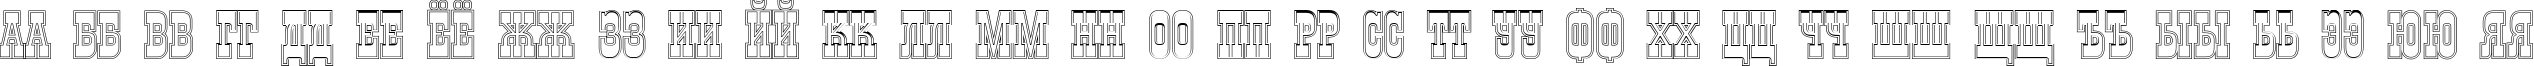 Пример написания русского алфавита шрифтом a_GildiaTitulDblOtl